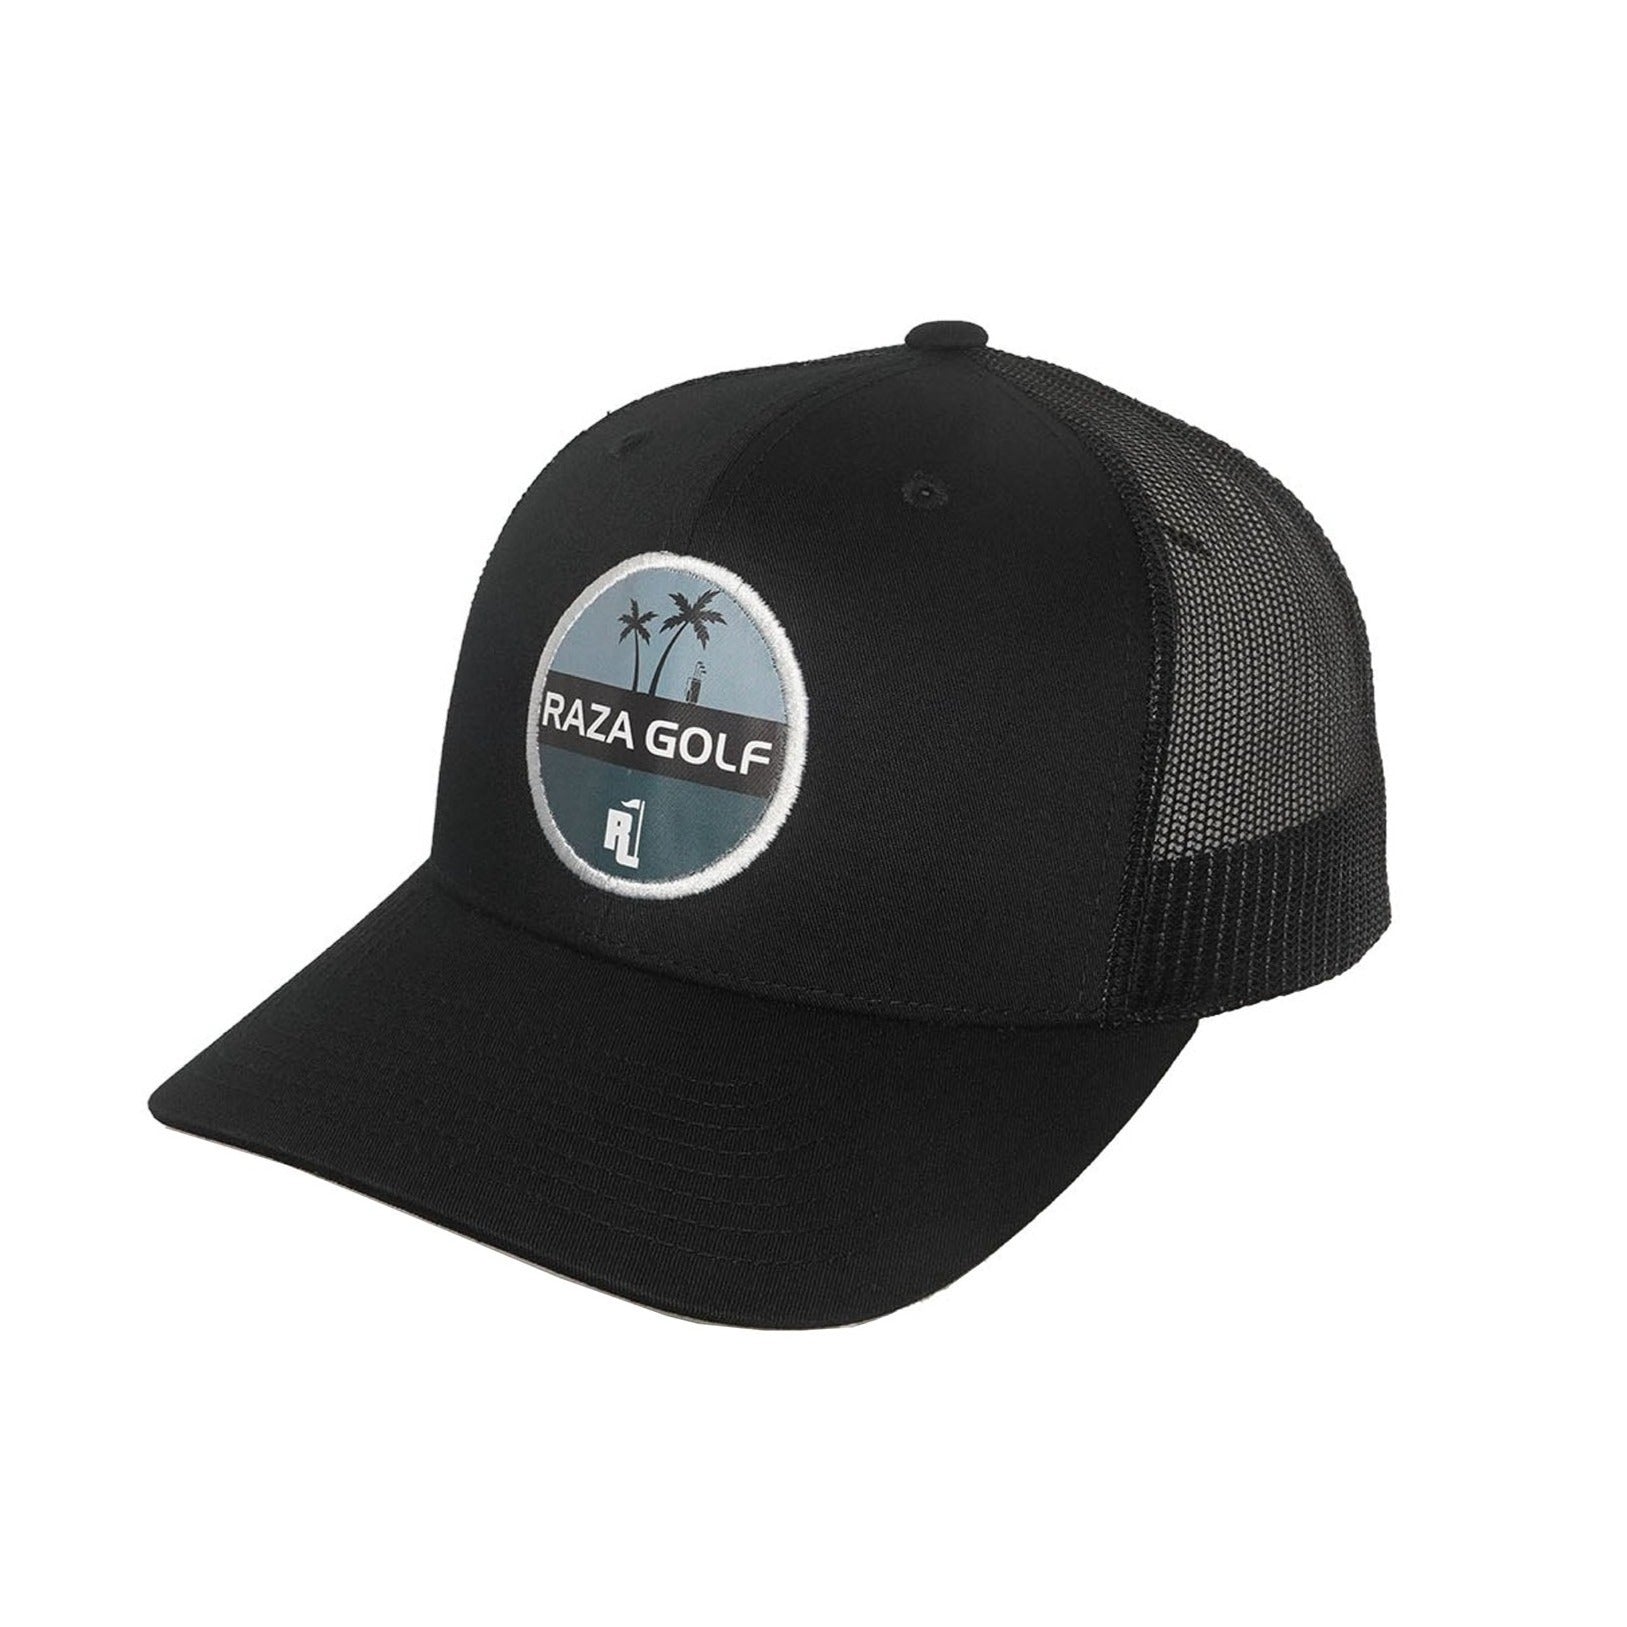 Raza Golf OG Trucker Hat